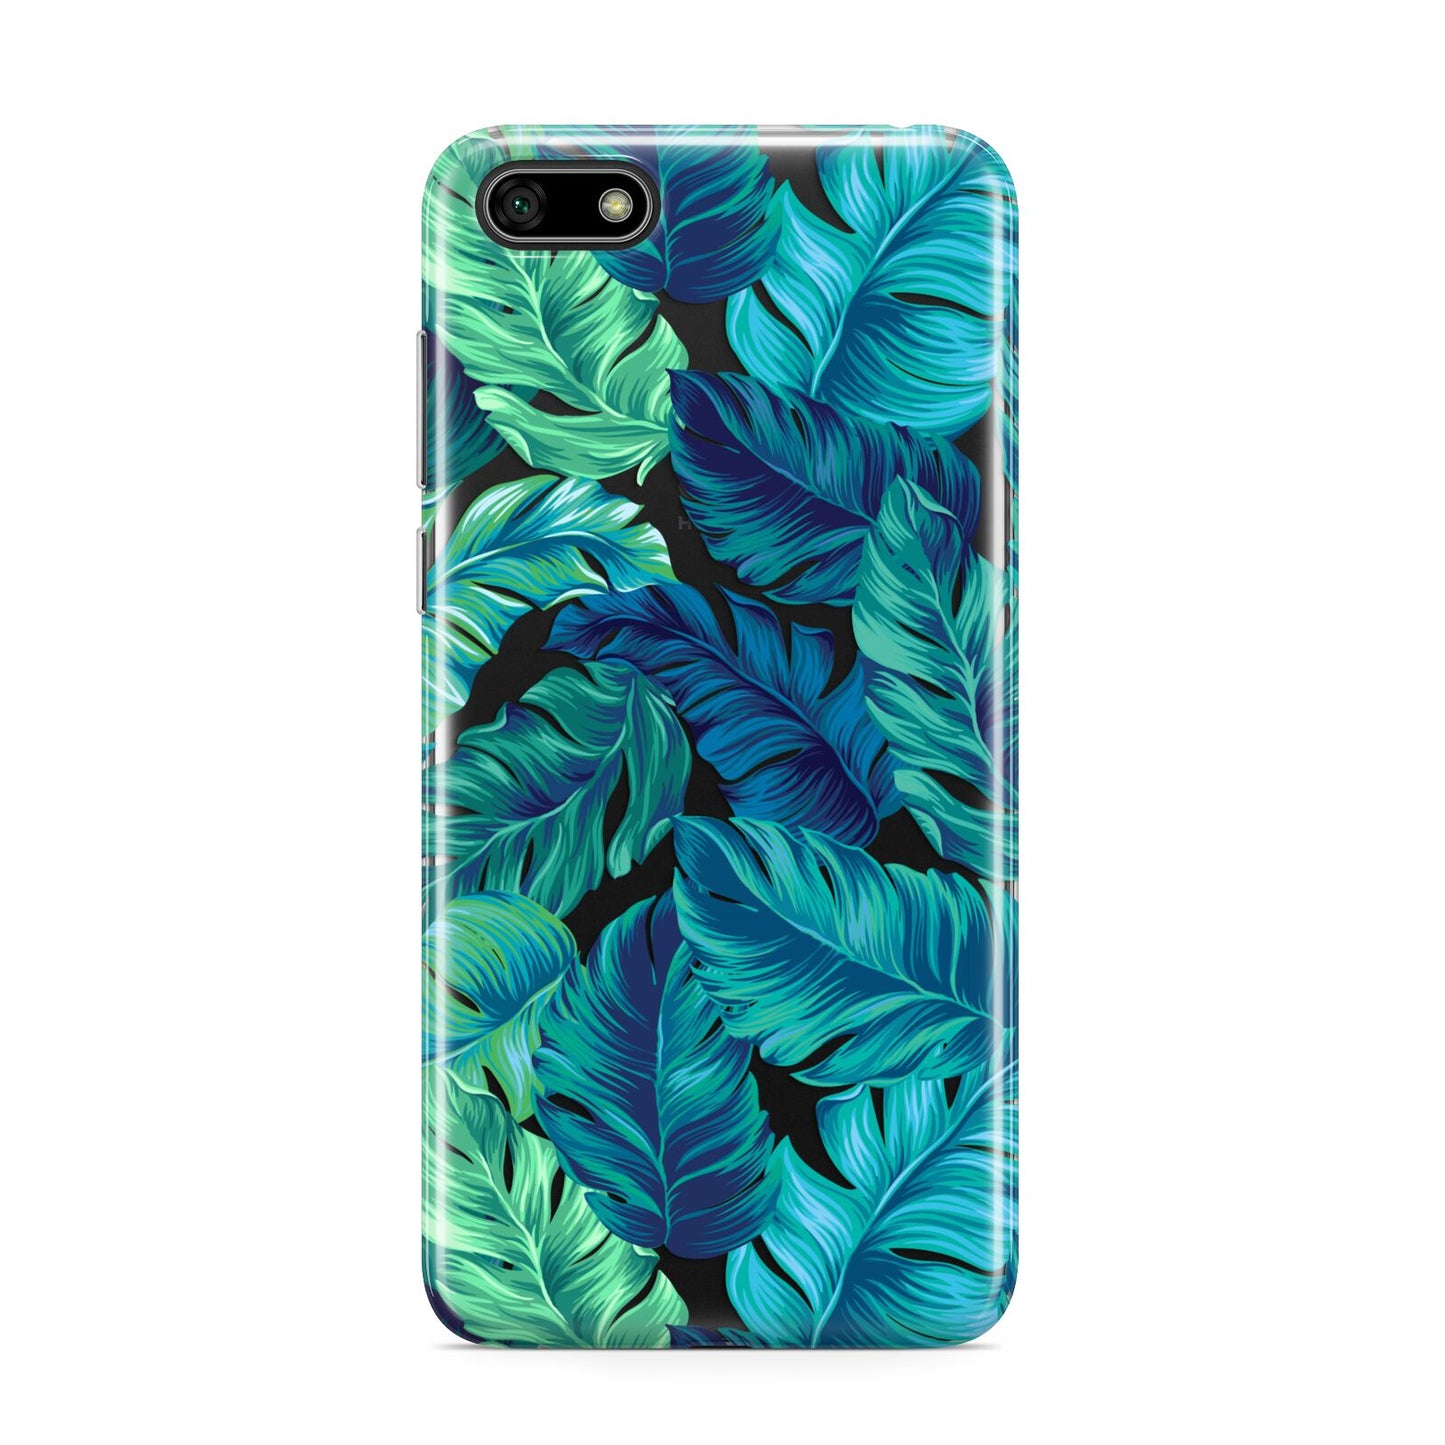 Tropical Leaves Huawei Y5 Prime 2018 Phone Case